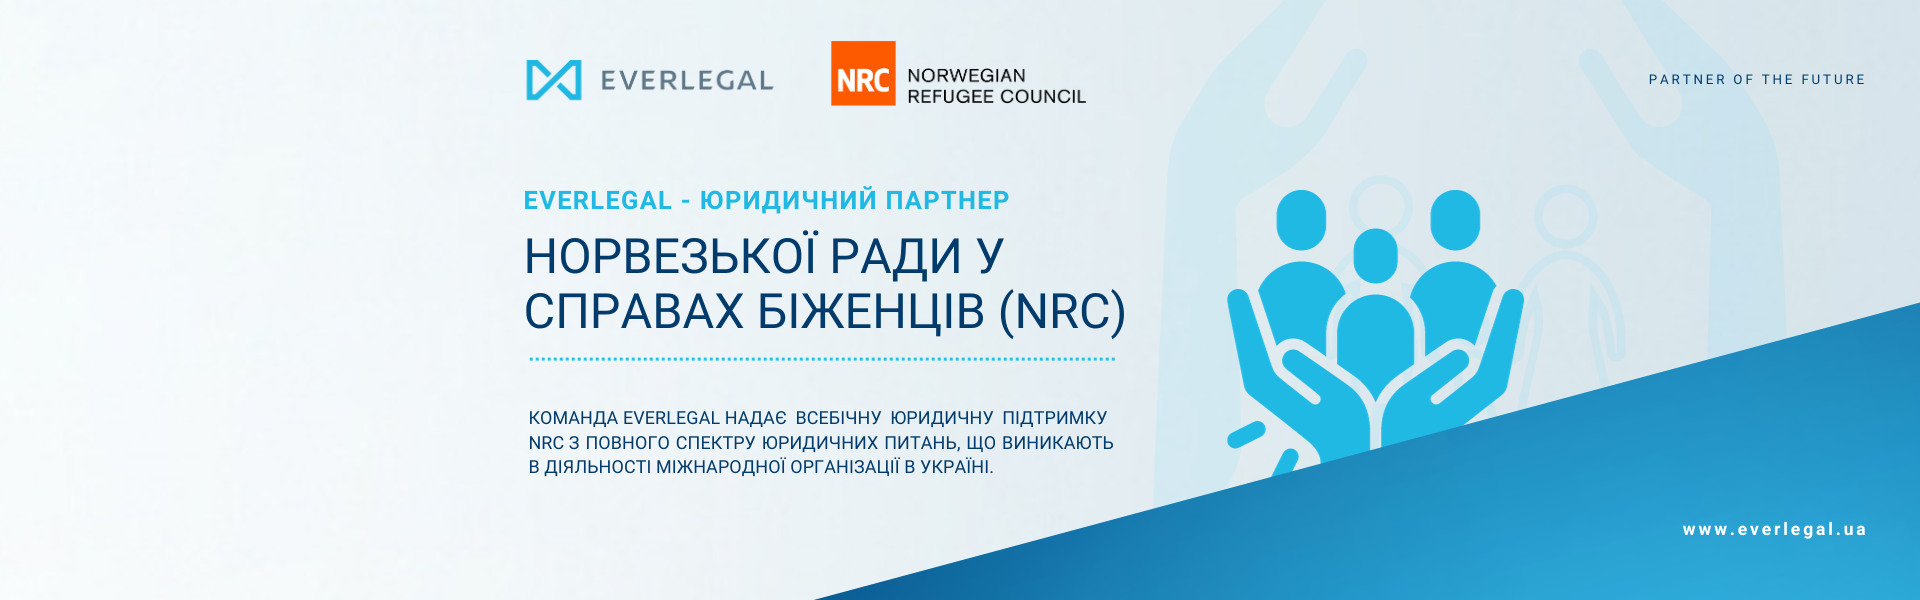 EVERLEGAL - юридичний партнер Норвезької Ради у справах біженців в Україні (NRC)